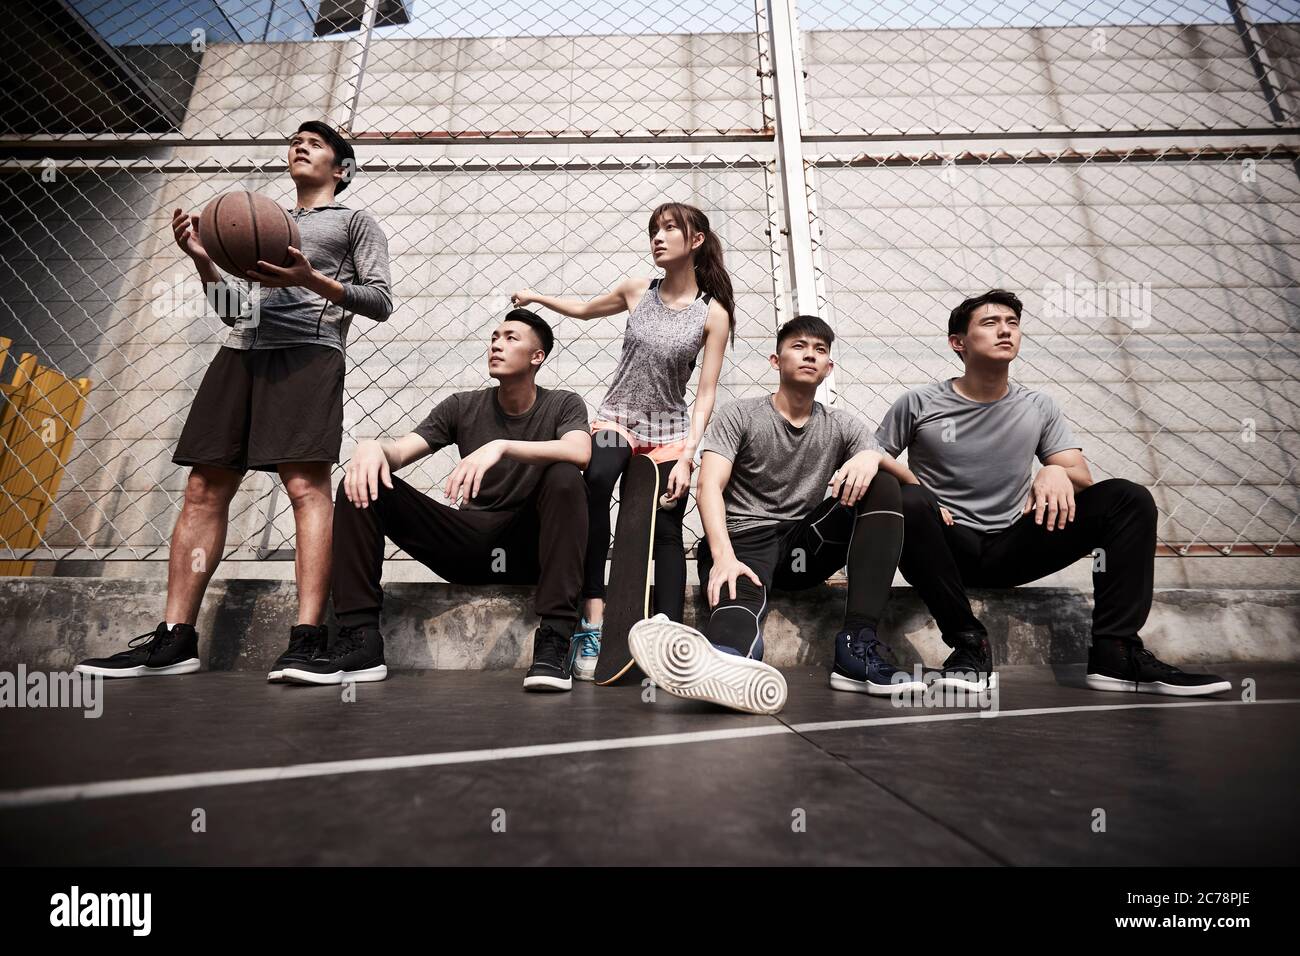 Gruppe von fünf asiatischen jungen Erwachsenen Männer und Frau, die sich auf dem Basketballplatz im Freien entspannen Stockfoto